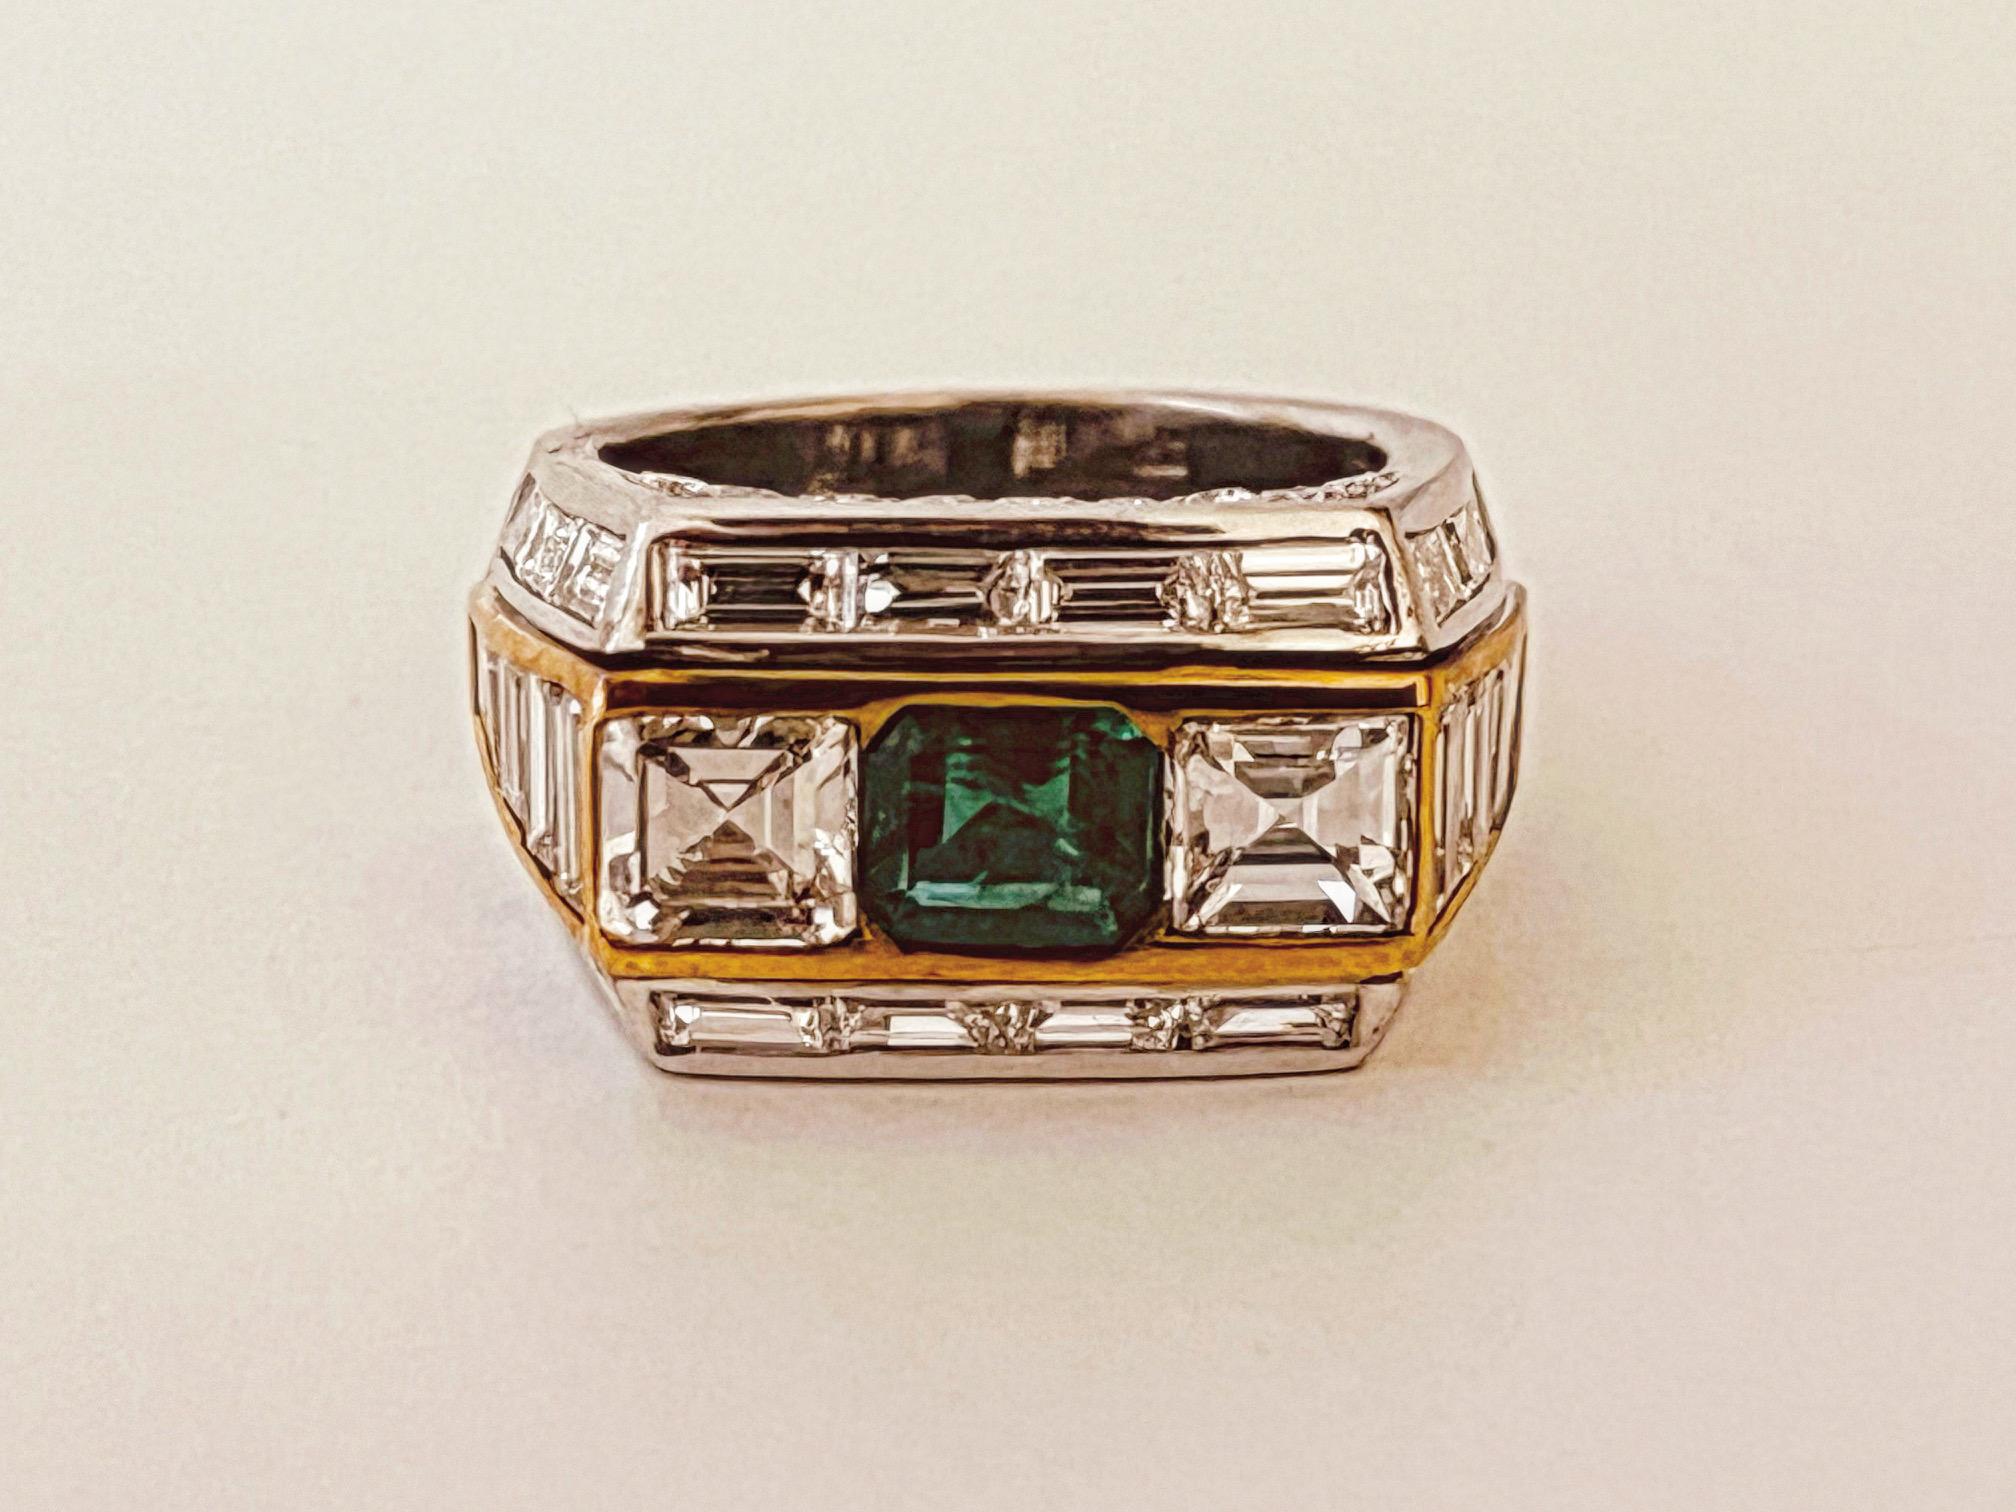 Ring mit Smaragd und Diamant. Die zentrale  Abschnitt mit einem Smaragd montiert und flankiert von zwei Diamanten im Smaragdschliff von 1,6cts. Die quadratisch geformten Seiten mit abfallenden Baguette-Schultern. Das Ganze ist mit einer Reihe von